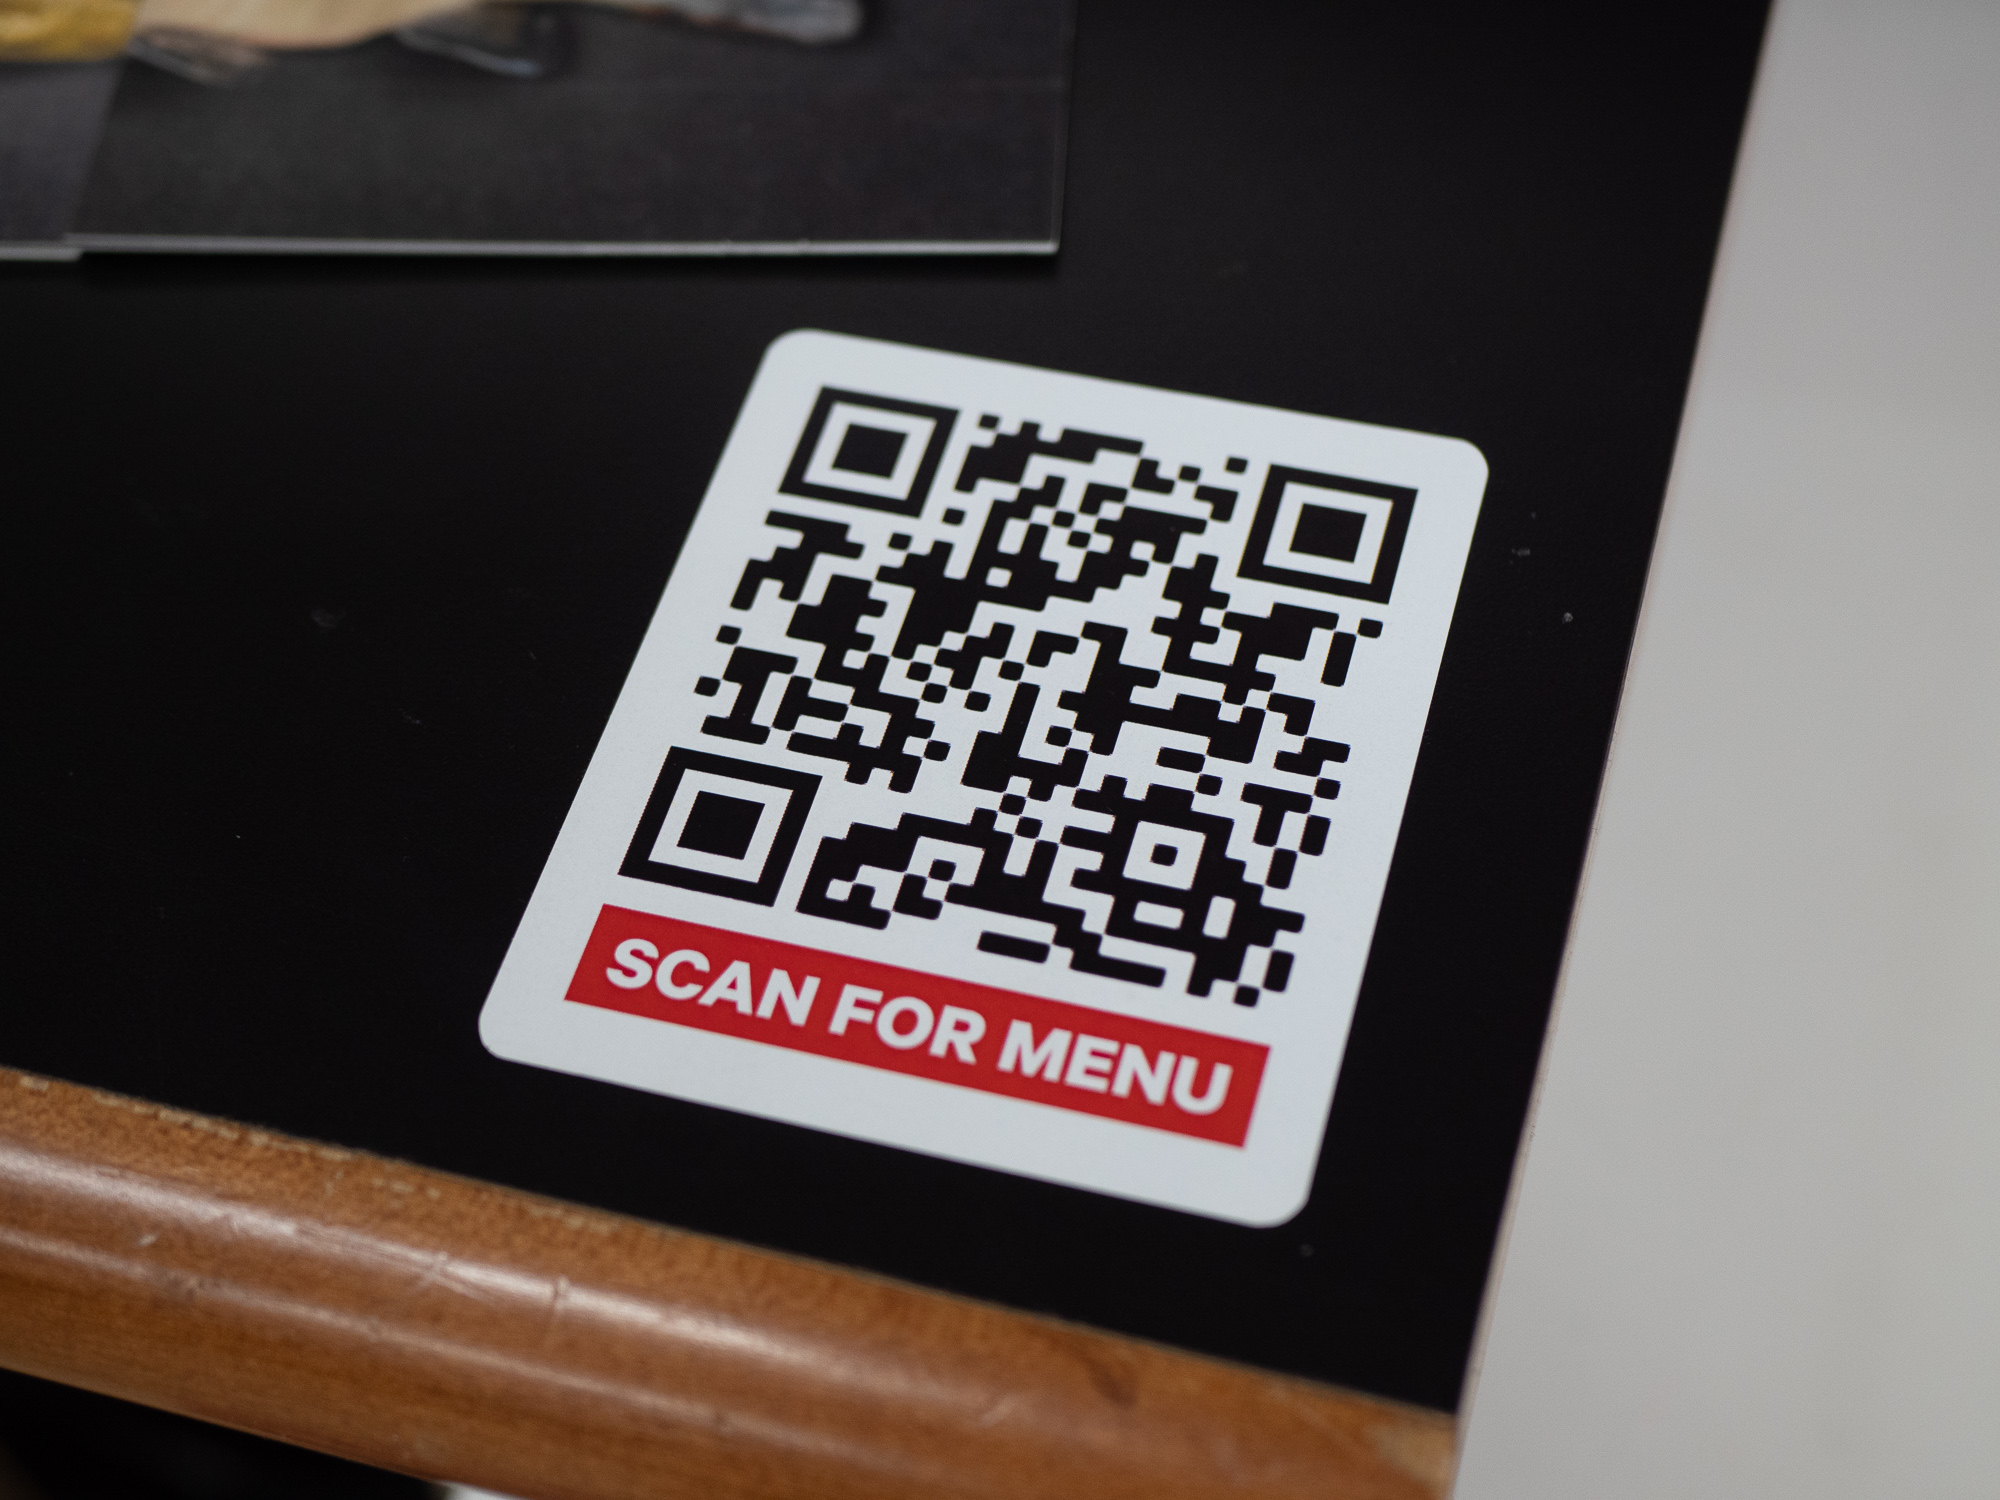 Твой qr код. Наклейка с QR кодом. Наклейки для QR кодов. QR коды в ресторанах. Наклейка с ЙК кодом на стол.